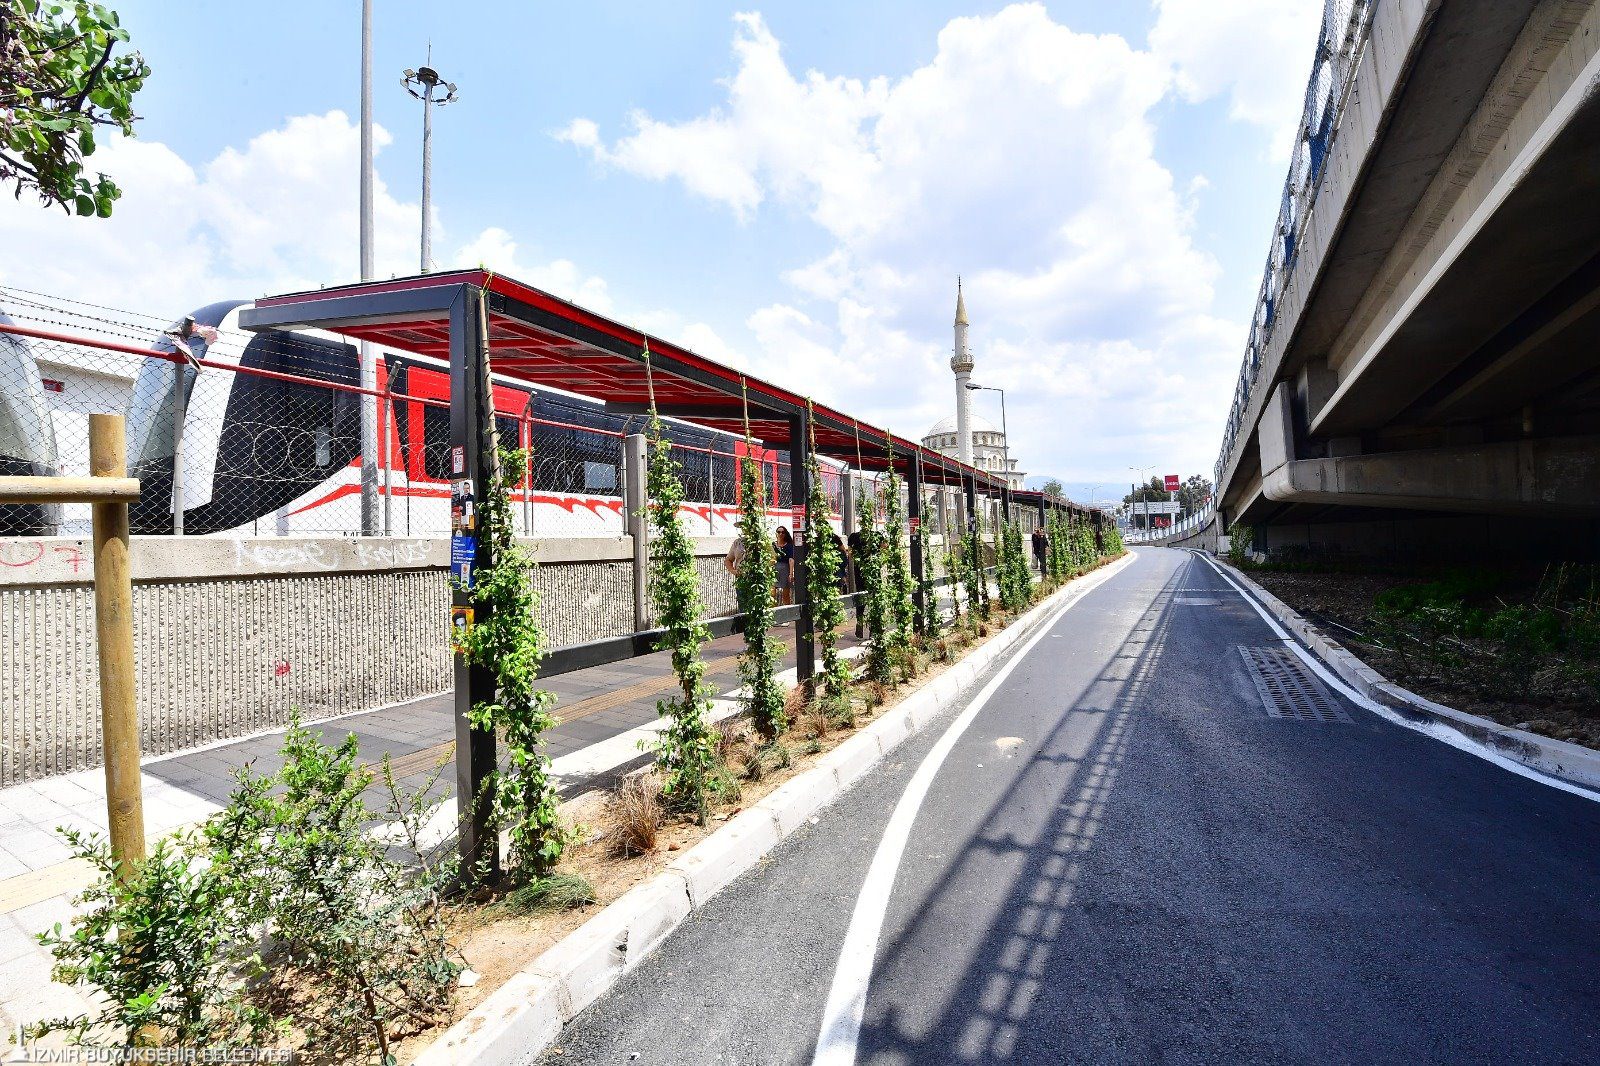 metro <p>İzmir Büyükşehir Belediyesi, “Atıl Alanları Kente Kazandırma” projesi kapsamında, her gün binlerce yurttaşın kullandığı Halkapınar Aktarma Merkezi’ni yepyeni bir görünüme kavuşturdu. 25 milyon liralık proje kapsamında 16 bin metrekarelik alanda tematik bahçeler, güneş enerjili gölgelikler, bekleme alanları ve karbon tutucu bitkilerle kaplı yeşil duraklar oluşturuldu, engelli dostu düzenlemeler yapıldı. İzmir Büyükşehir Belediye Başkanı Tunç Soyer’in “Atıl Alanları Kente Kazandırma” projesi kapsamında, İzmir’de toplu ulaşımın en yoğun noktası Halkapınar Aktarma Merkezi, doğayla uyumlu sürdürülebilir bir tasarıma kavuştu. İzmir Büyükşehir Belediyesi Fen İşleri Dairesi Başkanlığı tarafından yürütülen çalışma kapsamında her gün binlerce kişinin kullandığı Halkapınar Aktarma Merkezi’nde bekleme alanları, tematik bahçeleri,  gölgelikli yürüyüş alanları, yeşil duraklar ve engelli dostu düzenlemeler yapıldı.</p>
<p>Yayalar için konforlu ulaşım
16 bin metrekarelik alanda Metro-İZBAN çıkışı, viyadük altları, metro-tramvay arasındaki yaya kaldırımları ve otobüs aktarma alanlarını içeriyor. Yaya yolu ve bekleme alanlarının çevresinde yeşil koridorlar oluşturuldu. Metro ve İZBAN çıkışlarında bekleme, dinlenme alanları, tıbbi ve aromatik bitkilerden oluşan tematik bahçe peyzajları yapıldı. Tramvaya giden yaya yolu genişletildi ve gölgelik yapıldı. Yönlendirme, aydınlatma elemanları ile yaya ulaşımının güvenliği ve konforu artırıldı.</p>
<p>Karbonu azaltacak yeşil duraklar
Yeşil alan düzenlemelerinde hava kirliliğini azaltmak amacıyla az bakım gerektiren, karbon tutuculuğu yüksek bitki türleri kullanıldı. Otobüs durakları ve otobüs aktarma merkezi İzmir Büyükşehir Belediyesi’nin Doğayla Uyumlu Yaşam Stratejisi doğrultusunda sürdürülebilir, doğa esaslı çözümlerle düzenlendi. İklim krizine karşı kenti dirençli hale getirmek için otobüs duraklarında Yeşil Durak uygulaması yapıldı.  Durakların arkasına yeşil cepler yapıldı ve bu ceplere ağaçlar dikilerek gölge alanlar oluşturuldu. Otobüs aktarma merkezi yeşil alanları, dinlenme ve bekleme alanları ile kentlinin yaşam kalitesini yükseltecek şekilde düzenlendi.</p>
<p>25 milyon TL’lik yatırım
Halkapınar Aktarma Merkezi’nin kent içi ulaşımın önemli noktalarından biri olduğunu söyleyen Fen İşleri Dairesi Başkanlığı Merkez Bölge Yol İşleri Şube Müdürü Mustafa Kapı, “Başkanımız Tunç Soyer’in şehrimizin atıl bölgelerindeki alanları sürdürülebilir tasarımla yeniden kente kazandırma hedefi doğrultusunda burada 25 milyon TL yatırım yaparak bu merkezimizi yeniledik. Yaklaşık 16 bin metrekarelik bir alandan söz ediyoruz. Yenilenen haliyle bu alanda tematik bitkiler, gölgelikler, yürüme alanları gibi pek çok alanlar var. Tüm bu çalışmalar engelli dostu olarak planlandı. Proje kapsamında yeşil duraklar oluşturduk. Bu duraklar karbon tutuculuğu yüksek bitki örtüsüyle kaplandı. Aynı zamanda az bakım gerektiren bitkilerden oluşuyor. Çok güneş alan bölgelere güneşlik yaptık ve o güneşliklerin üzerine güneş panelleri yerleştirdik. 7 bin metrekarelik zeminin asfaltını yeniledik ve kumlamalı granit parke taş döşedik” diye konuştu.</p>
<p>“Atıl alanlar kent yaşamının parçası haline gelecek”
“Atıl Alanları Kente Kazandırma” projesini İzmir genelinde yaygınlaşmaya devam edeceğini ifade eden Kapı, “Projeyi pilot bölge olarak seçtiğimiz Halkapınar Aktarma Merkezi’nin ardından kentin diğer bölgelerindeki atıl alanlarda da uygulayacağız. Böylelikle bu alanların kent yaşamının bir parçası haline gelmesi sağlanarak yeşil altyapı çalışmalarının devamlılığı sağlanacak” dedi.</p>